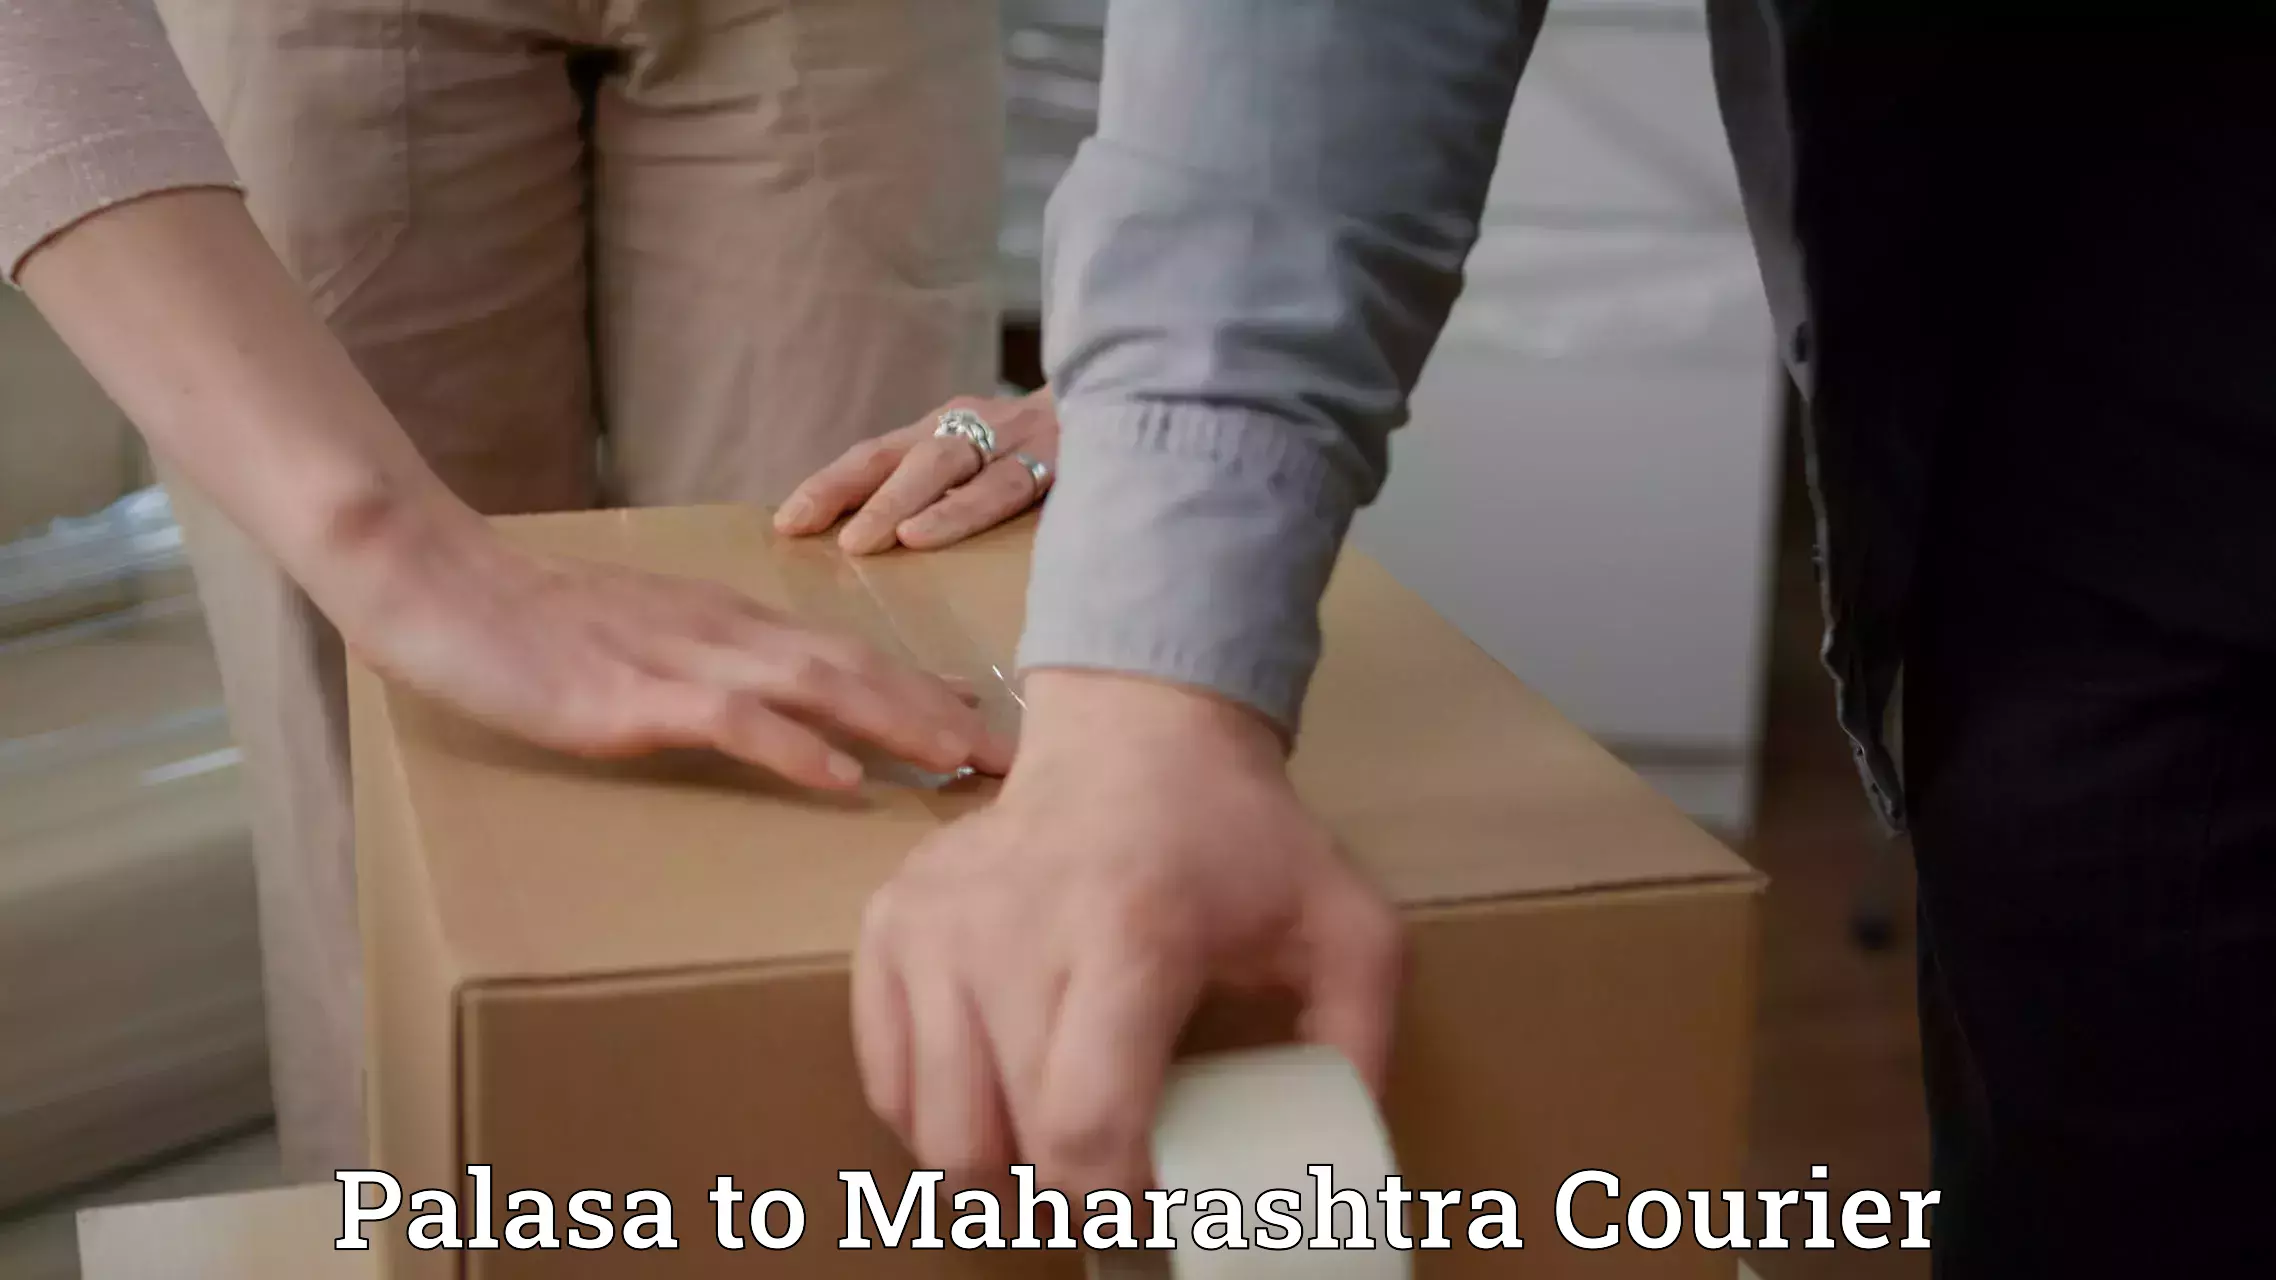 High-speed logistics services Palasa to Maharashtra